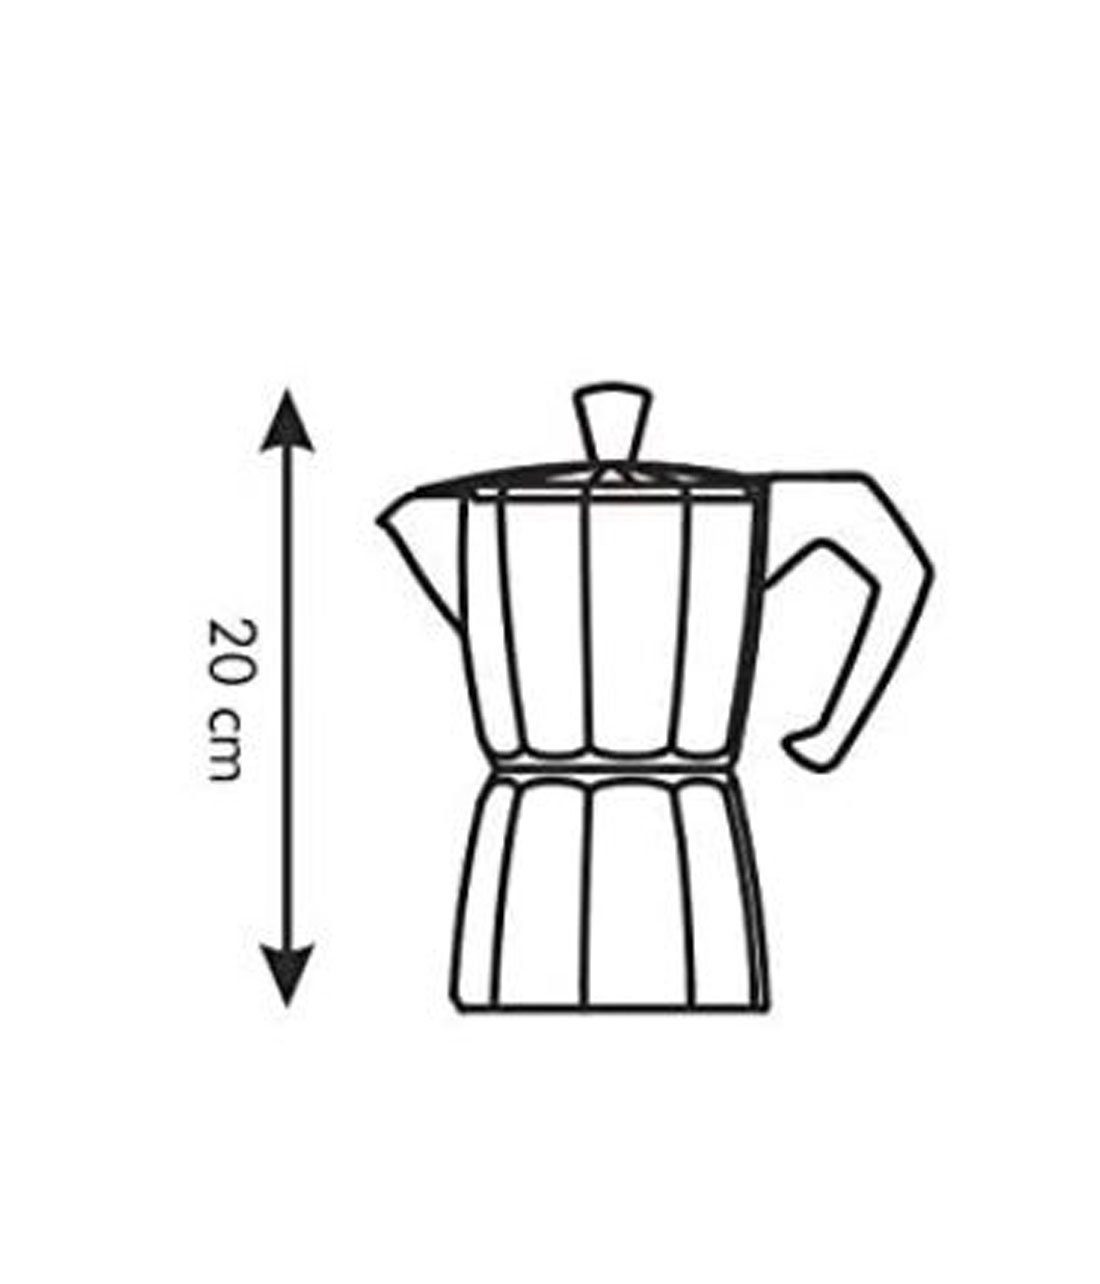 Tescoma Espressokocher PALOMA für 6 aus Aluminium Tassen Kaffeekocher